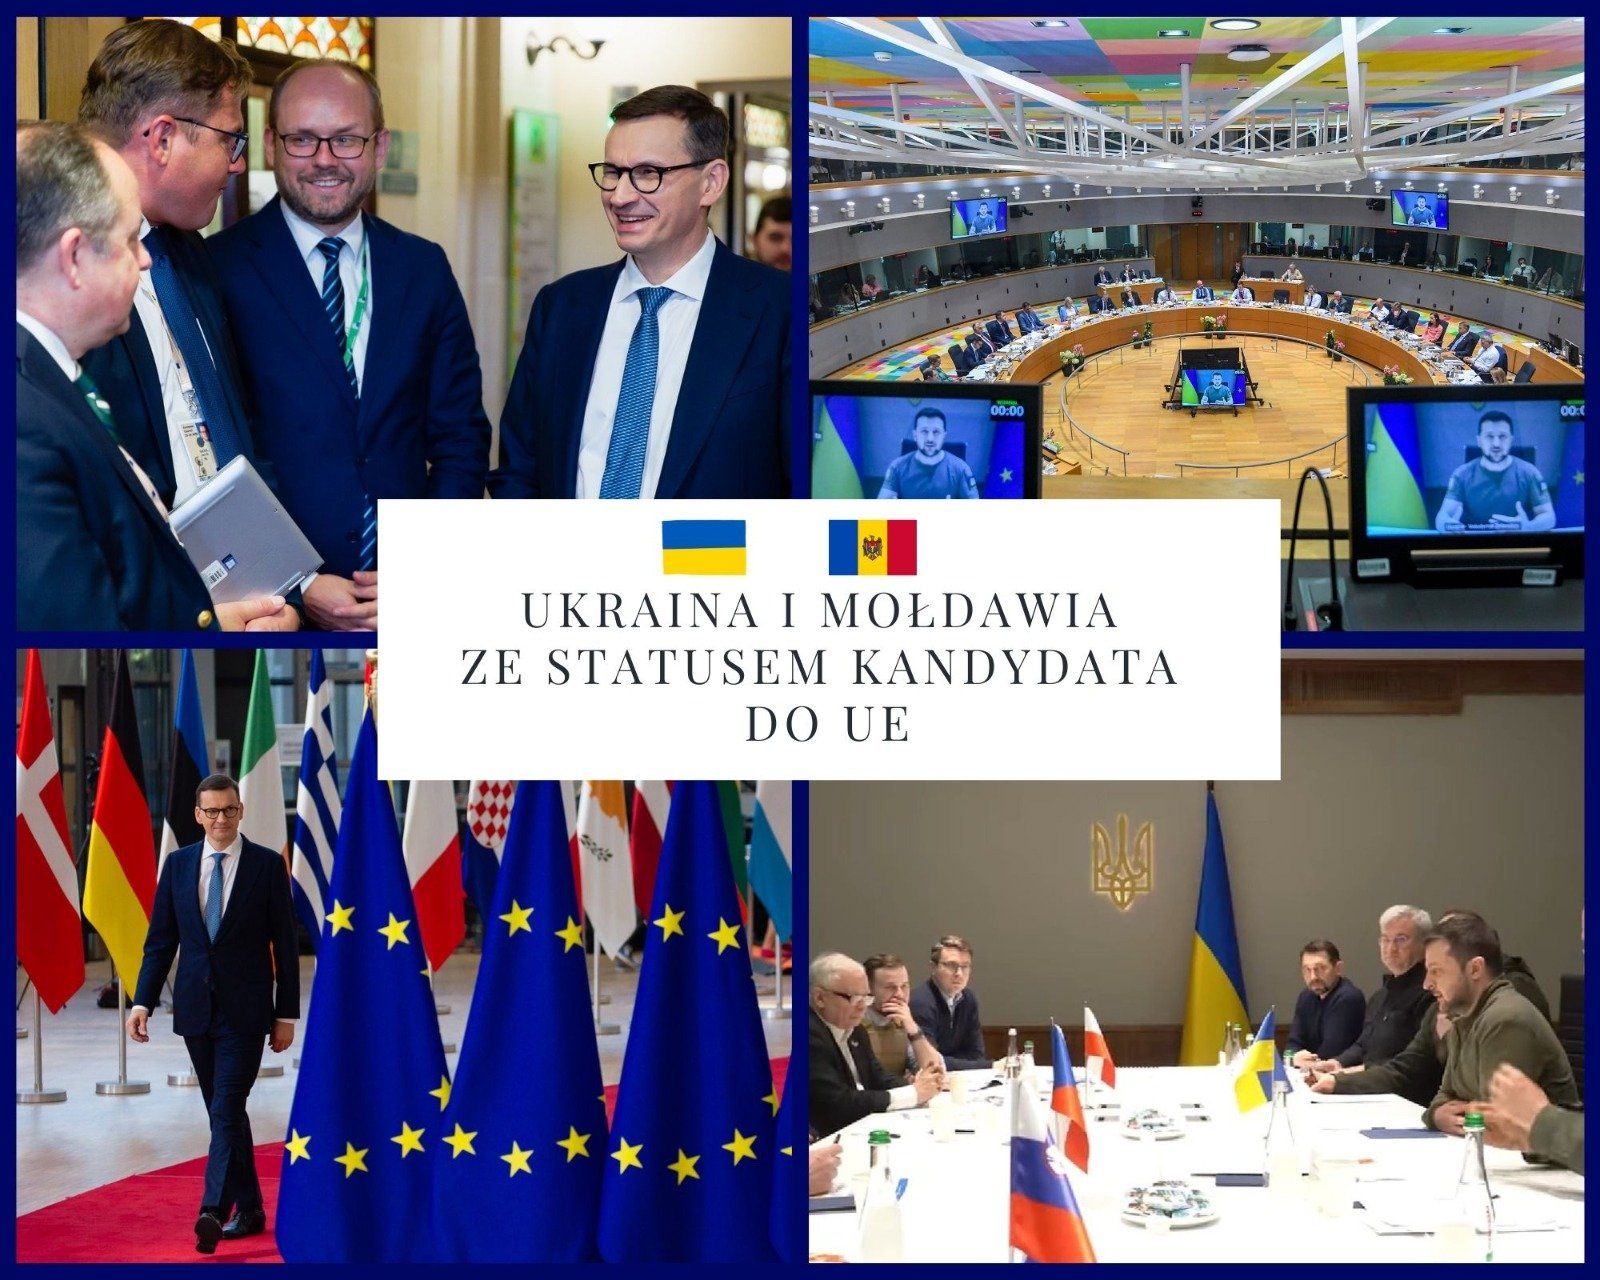 Przyznanie Ukrainie i Mołdawii statusu kandydata do UE to wielka chwila. Sukces ten nie byłby możliwy, gdyby nie wysiłki polskiej dyplomacji. To Polska jako jedna z pierwszych państw opowiadała się za otwarciem europejskiej perspektywy dla Ukrainy.